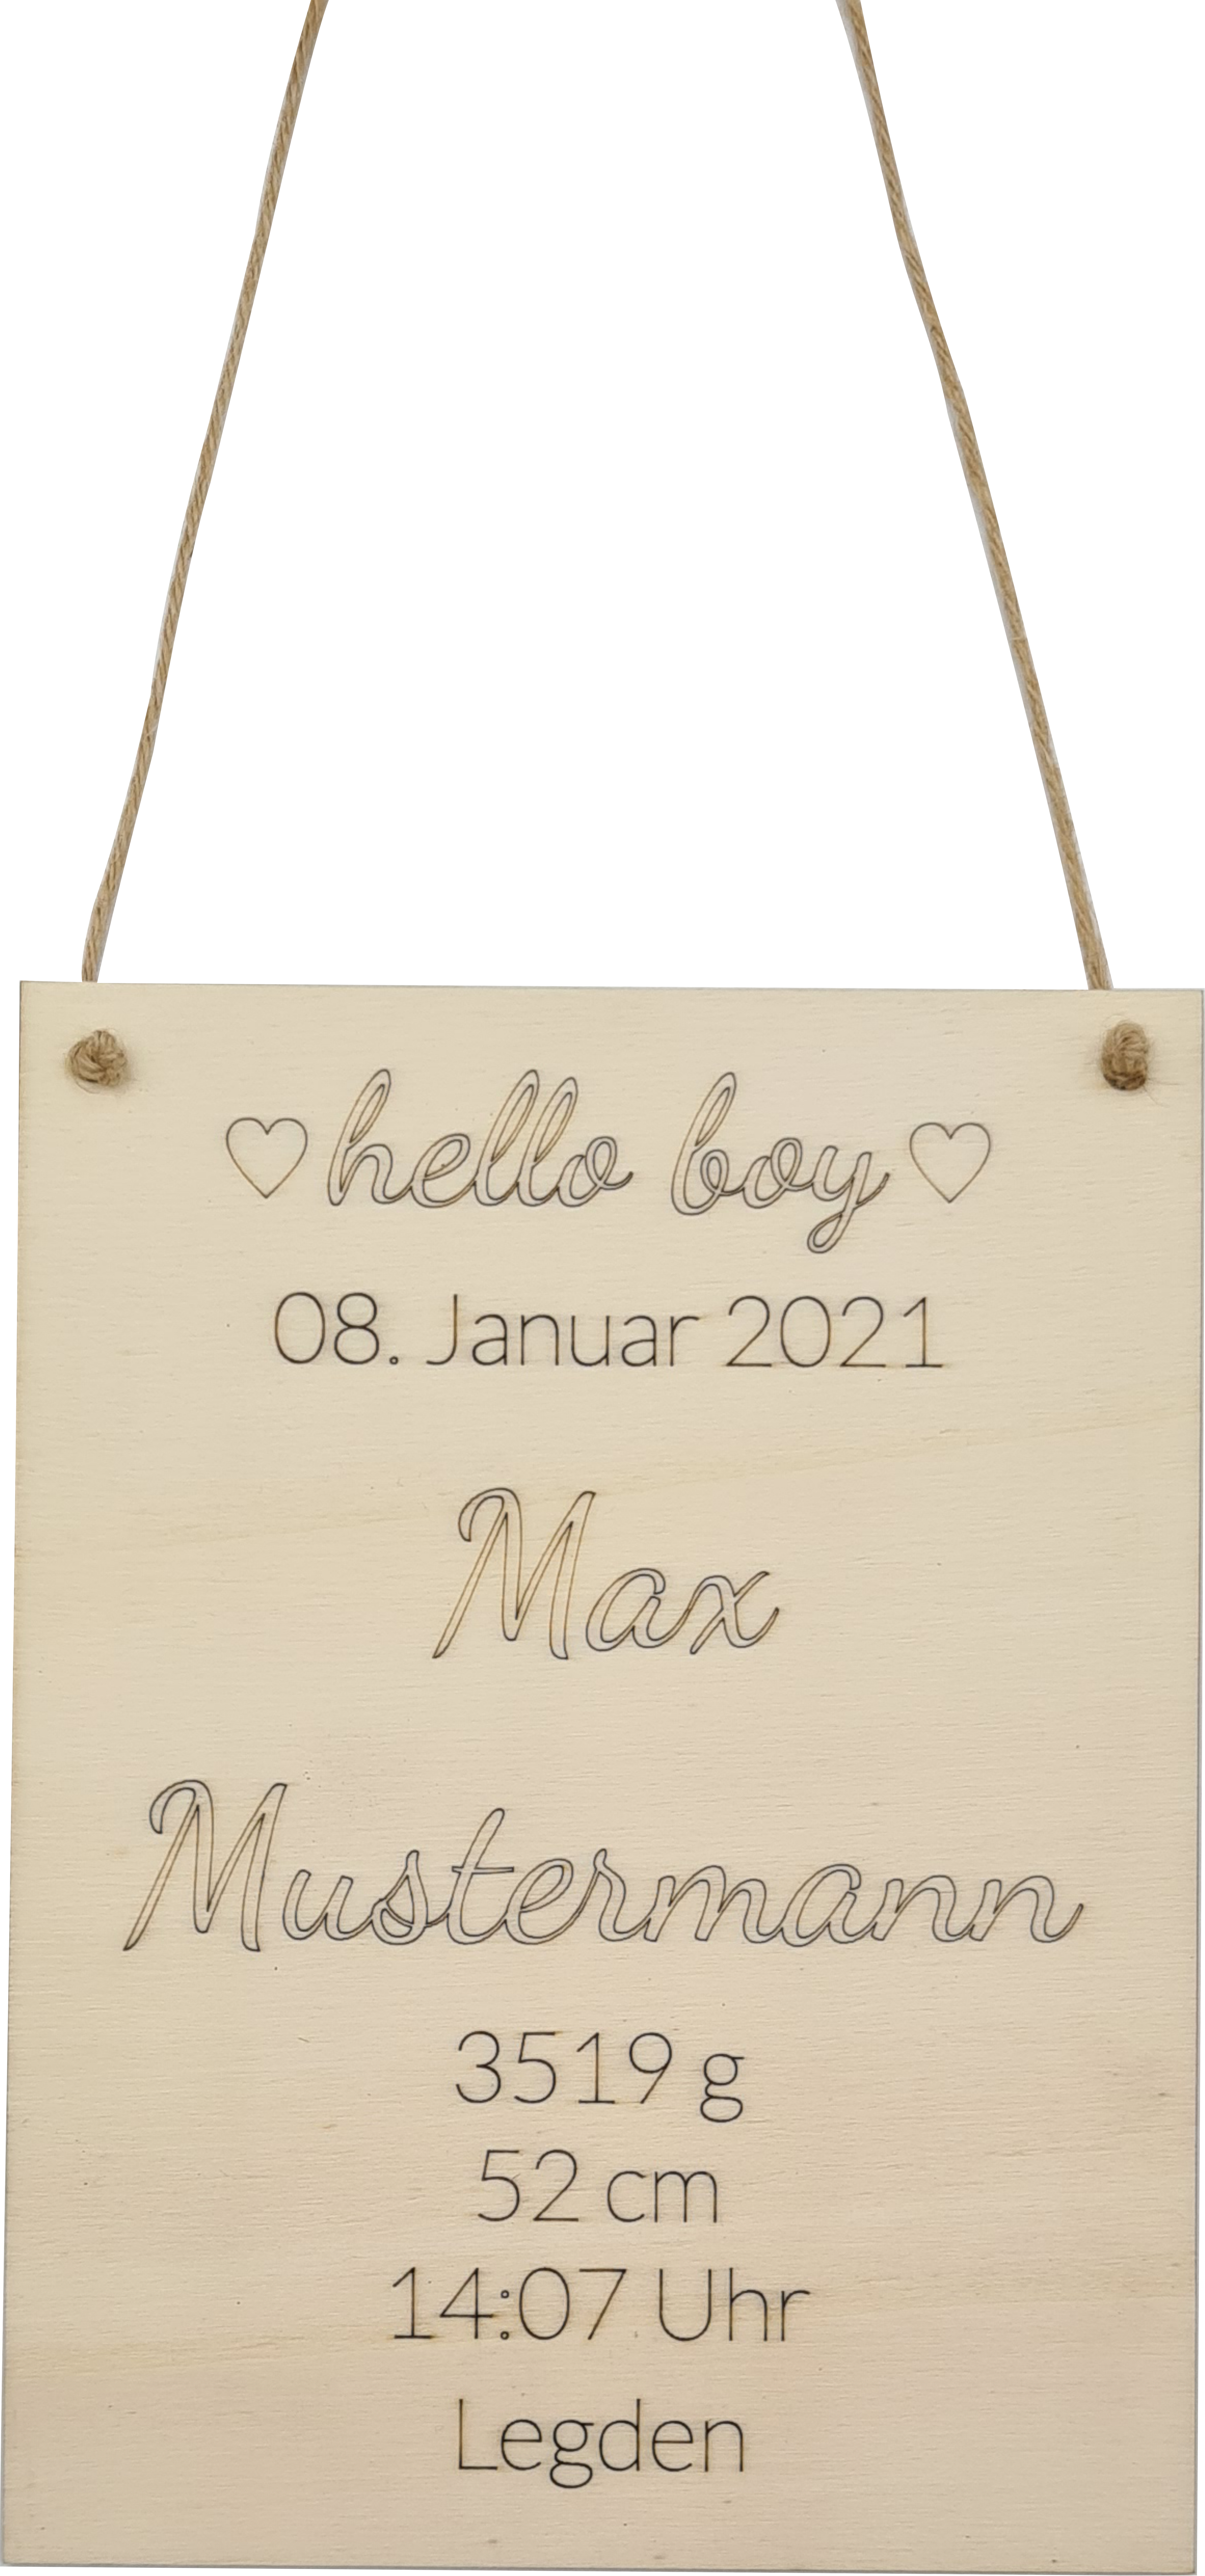 Holzschild mit Namen und Geburtsdaten - hello boy 